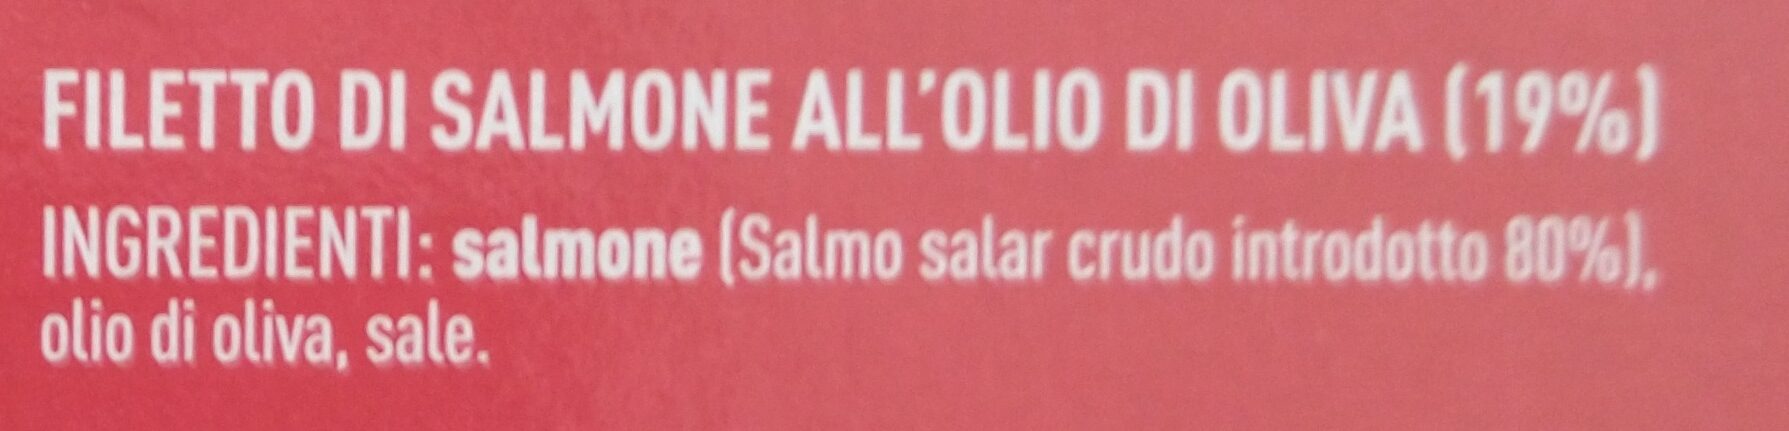 Filetto di salmone all'olio di oliva - Ingredienti